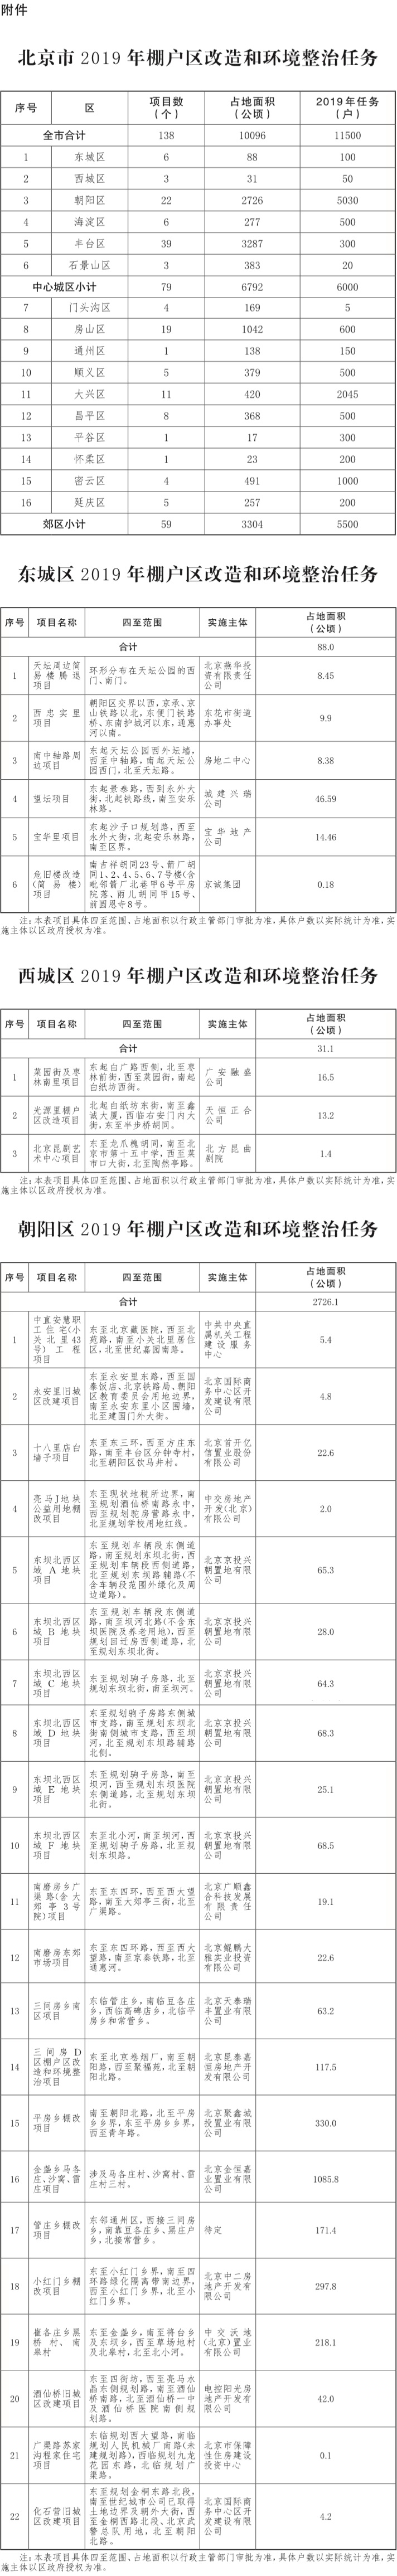 17-北京市2019年棚户区改造和环境整治任务-001.jpg